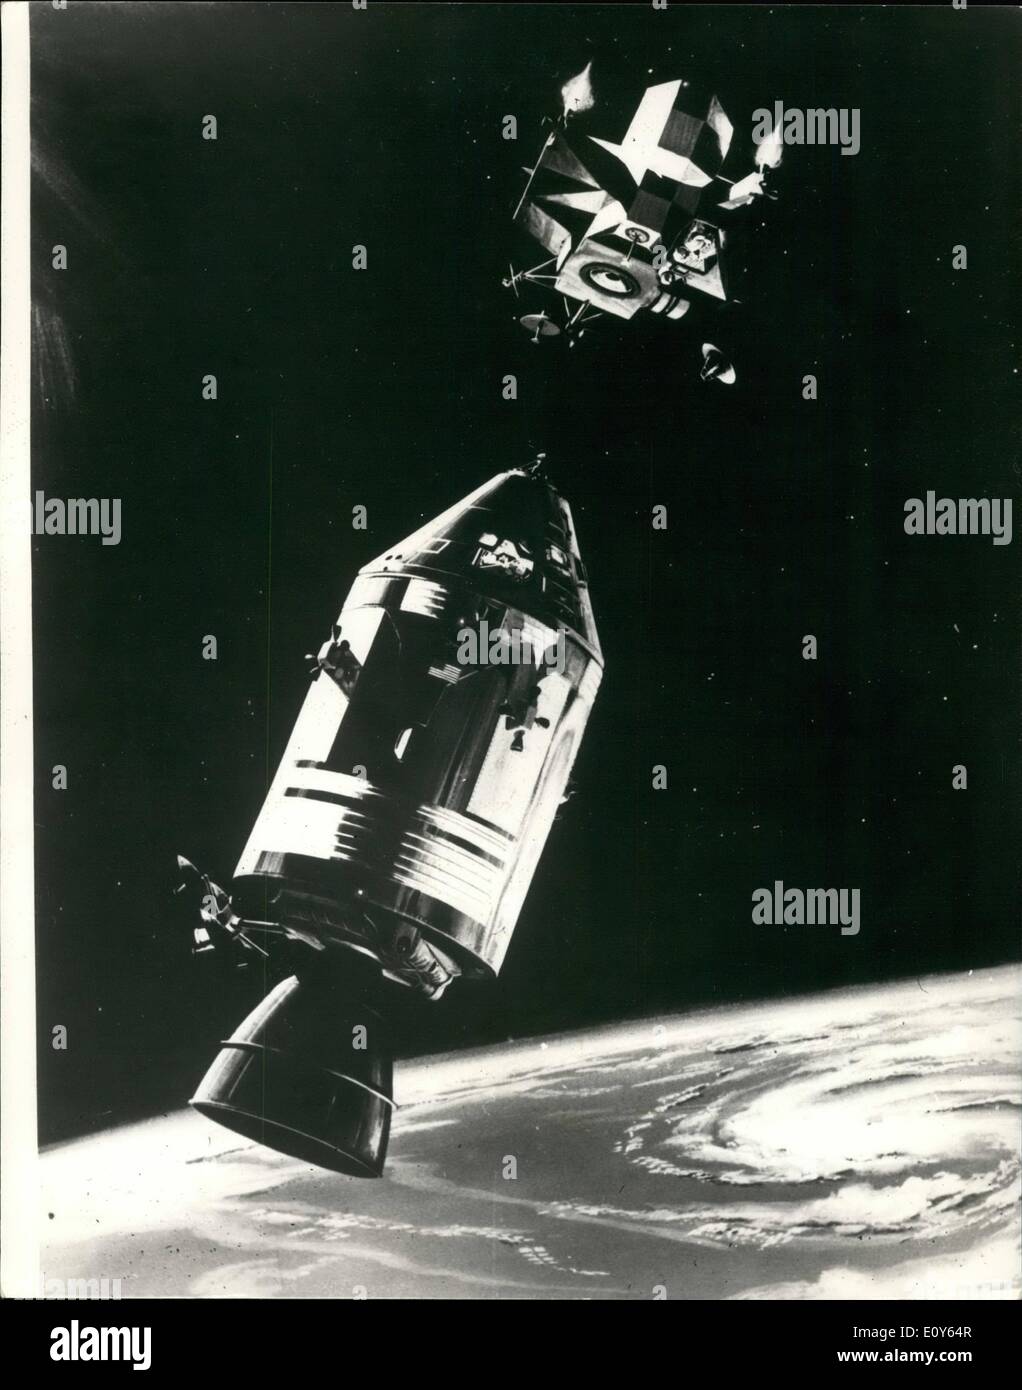 Mar 03, 1969 - Apollo equipaggio tutti insieme per andare. L'Apollo-9 volo spaziale guardare tutti insieme a prendere il largo - i tre astronauti James McDivitt, David Scott e Russell Schweickart sembrano essersi affrancati dal loro raffreddori. Mostra fotografica di:- Questo disegno mostra l' Apollo 9 comando di veicoli spaziali e dei moduli di servizio essendo trattenuto in posizione da astronauta David Scott come Modulo Lunare Pilot Russell Schweickart manovre la fase di risalita del LM al primo presidiati rendezvous e docking circa 150 miglia sopra la superficie della terra Foto Stock